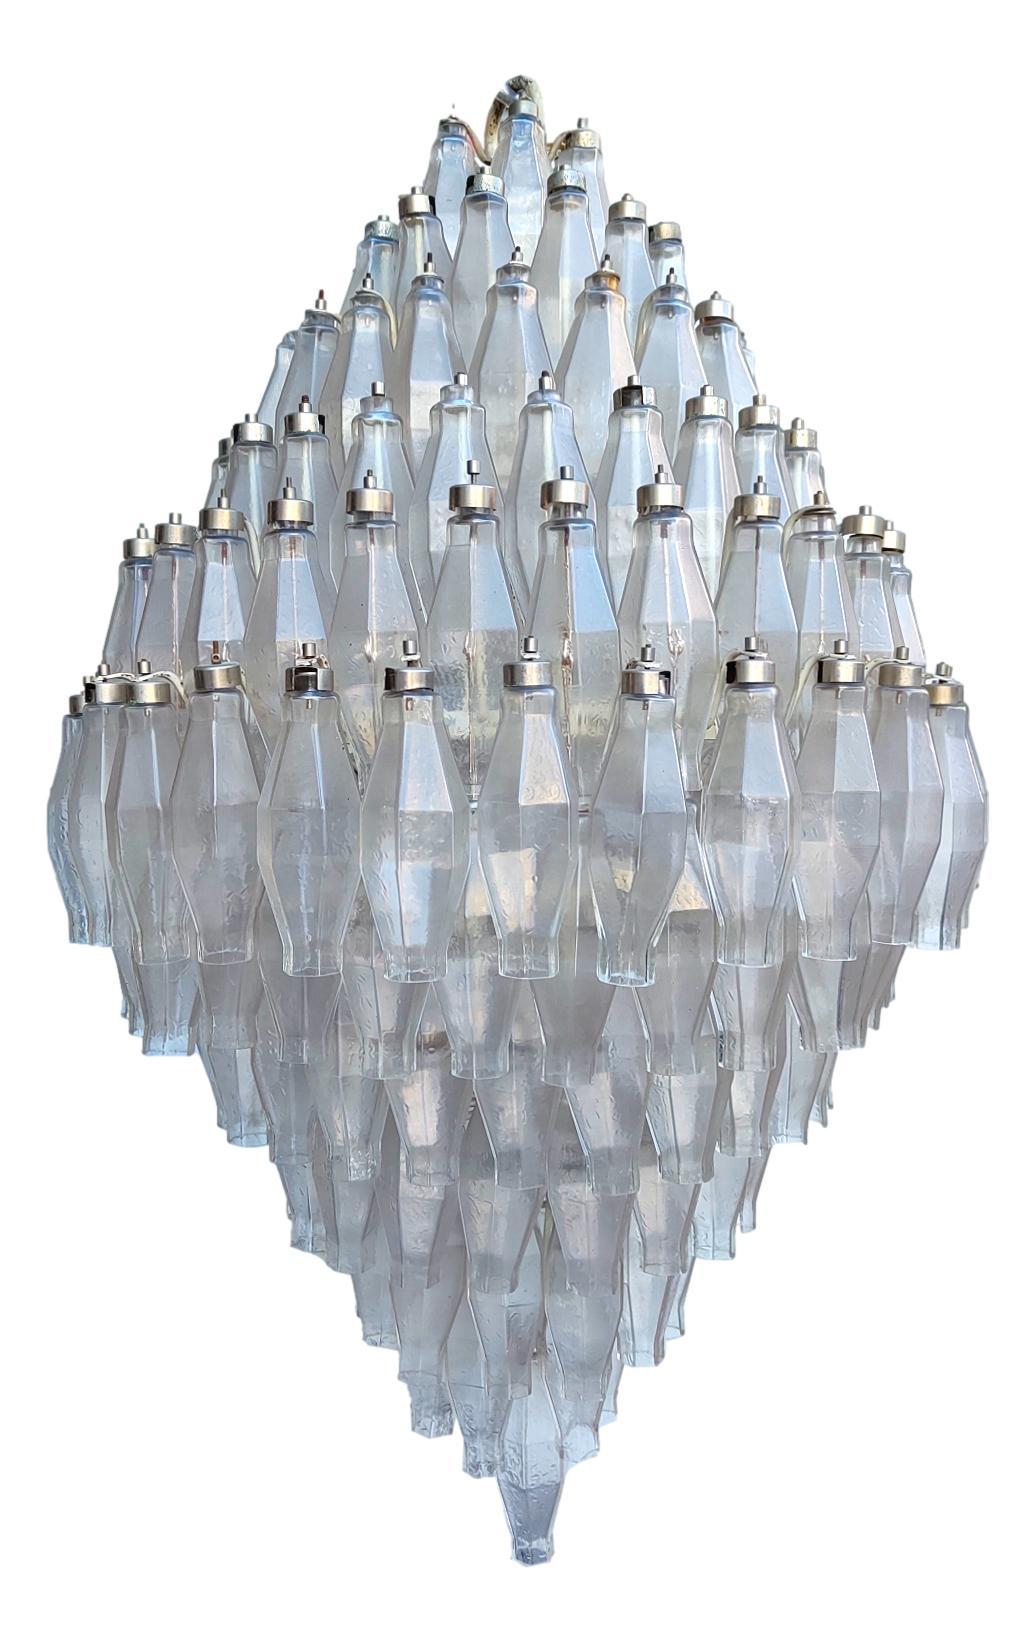 rare lustre énorme et majestic de venini, design carlo scarpa, fait de 205 verres transparents poliedri, avec 19 porte-ampoules.
hauteur 1 mètre, diamètre cm 70.
pas de poliedri perdu, seulement quelques caps, comme les photos.
Très bon état, pas